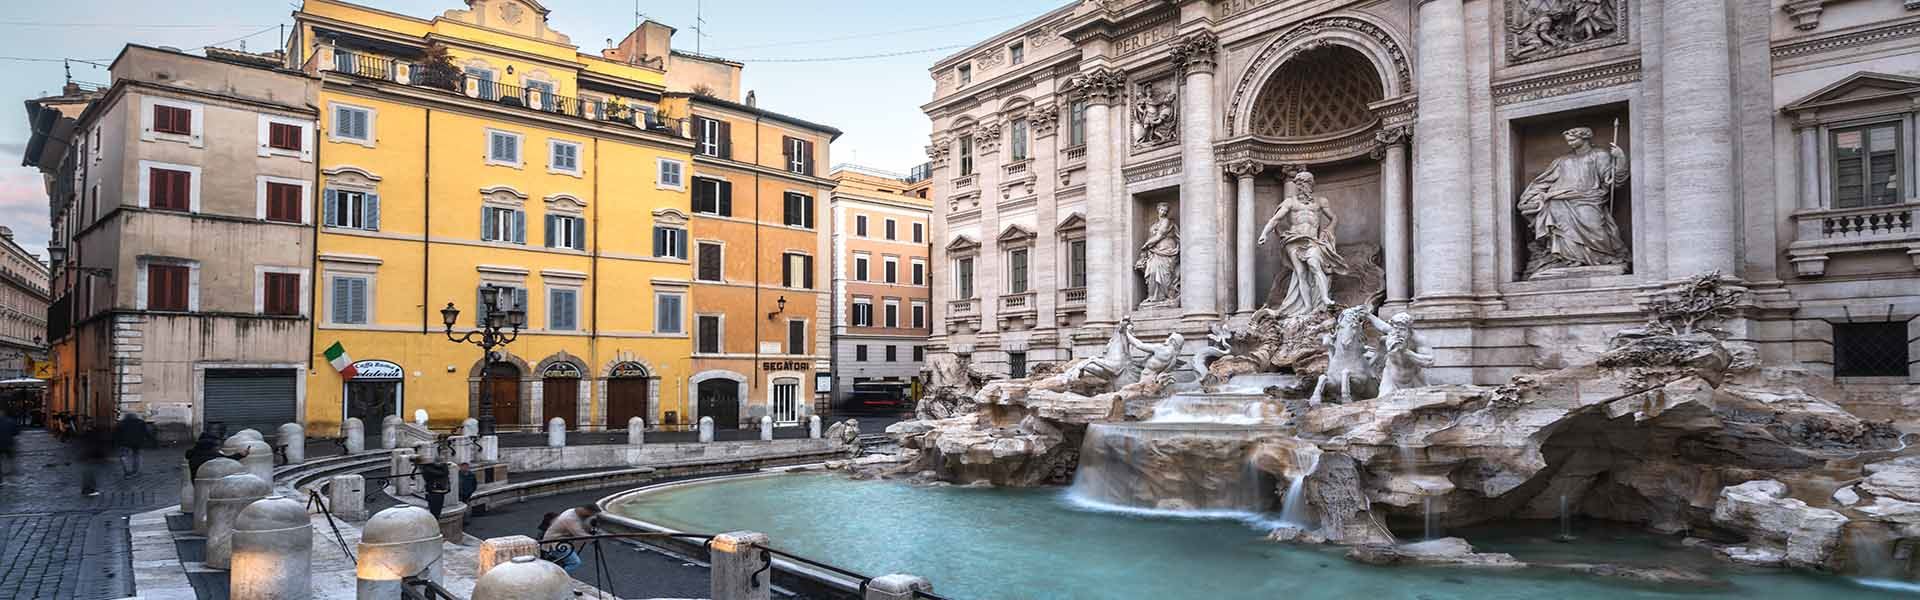 Immagine da una prospettiva laterale della Fontana di Trevi. A destra dell'immagine c'è la fontana di acqua azzurra cristallina, col Palazzo Poli, in pietra, proprio dietro la fontana. A sinistra dell'immagine ci sono vari edifici colorati nei toni dell'arancio.